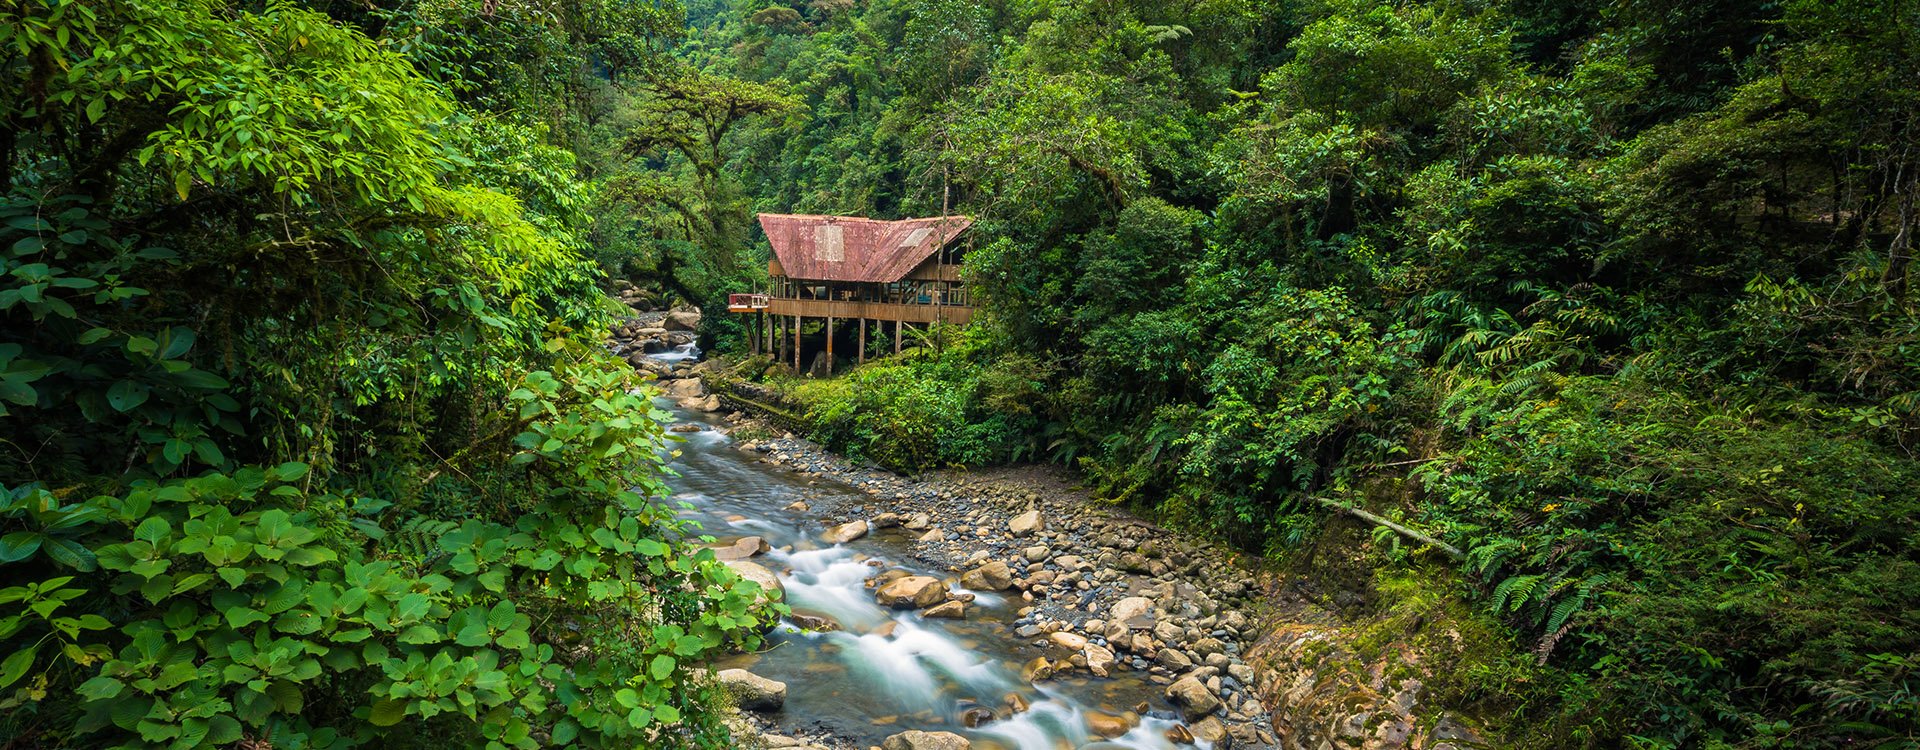 A jungle lodge by a river in Manu National Park, Peru